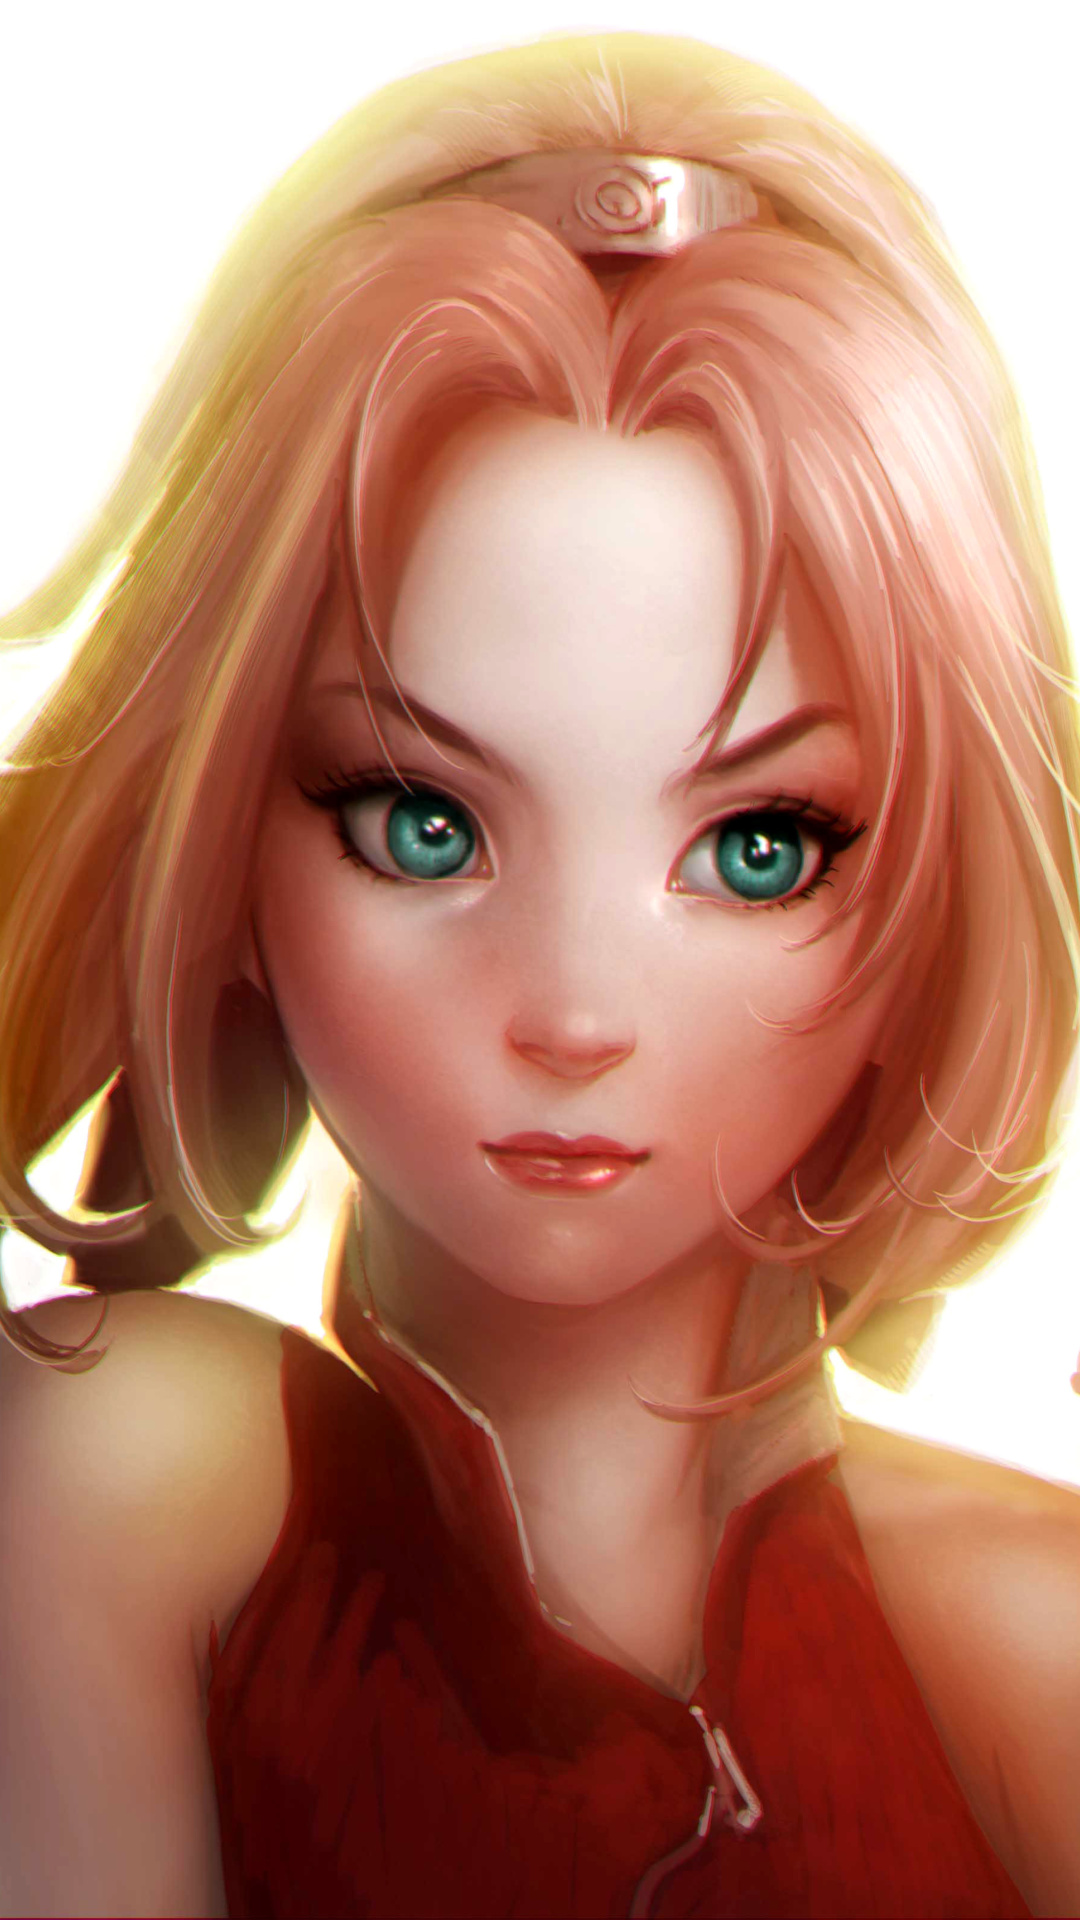 Sakura - Naruto Girl screenshot #1 1080x1920